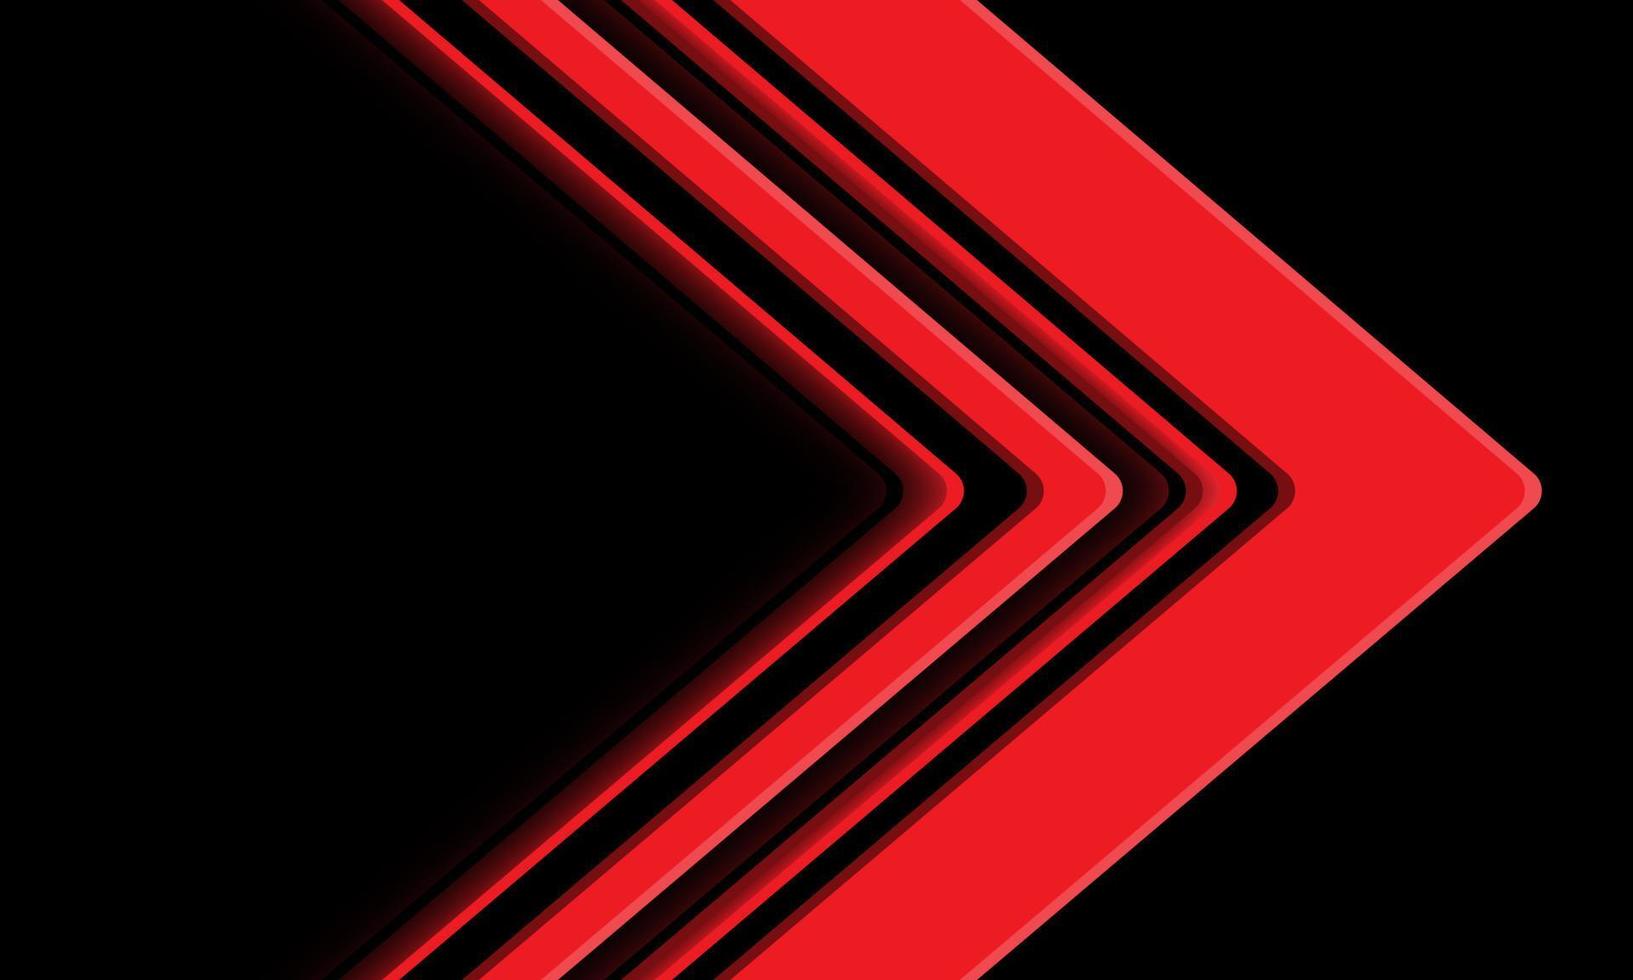 Direção da seta vermelha abstrata geométrica em vetor de fundo de tecnologia futurista moderna de design preto